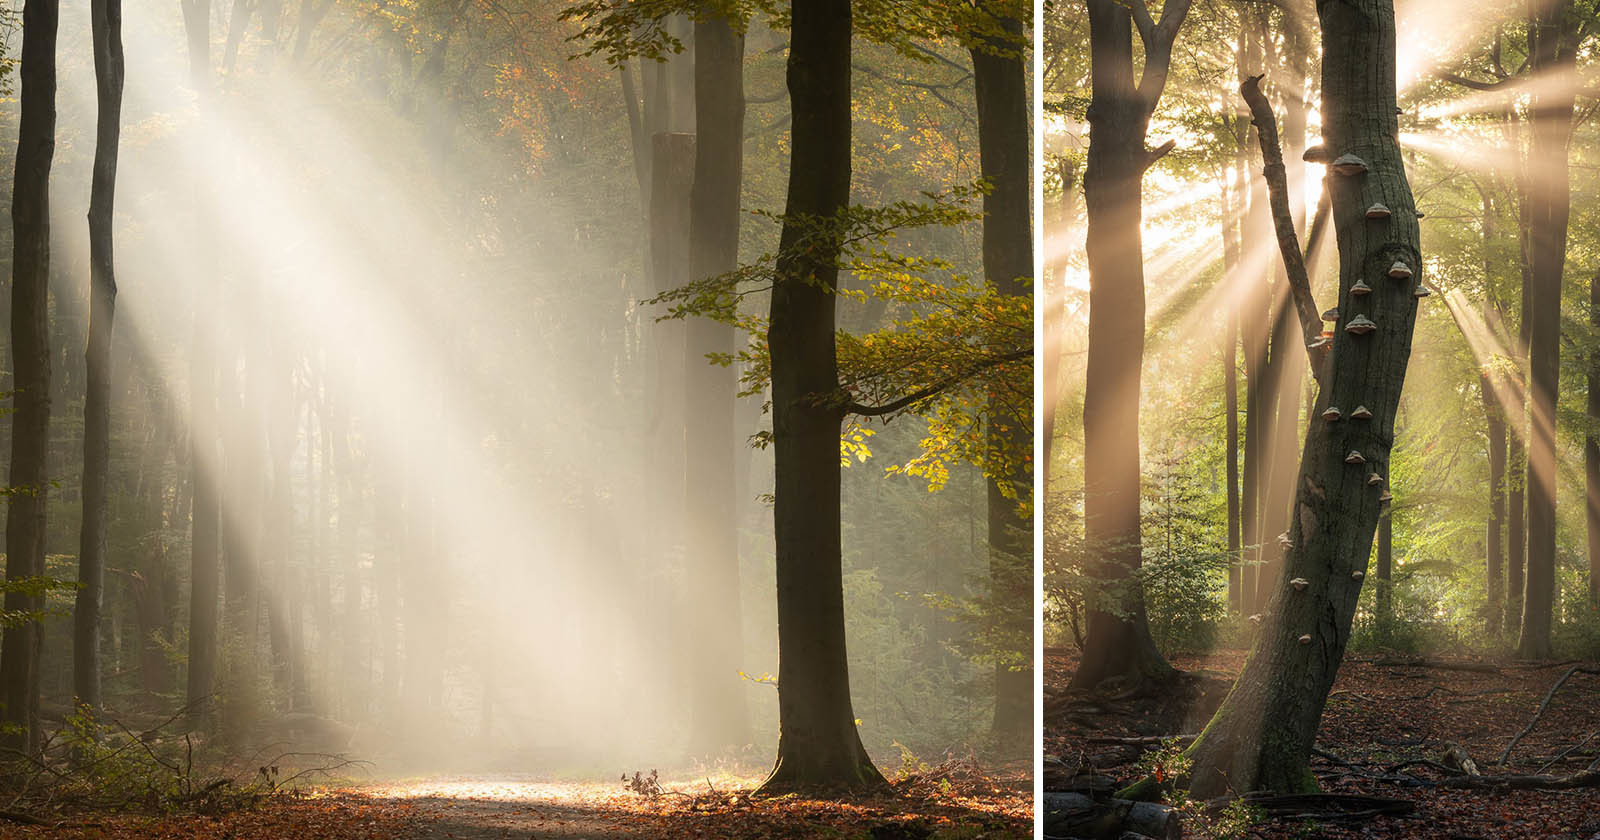  how photograph sun rays forest 